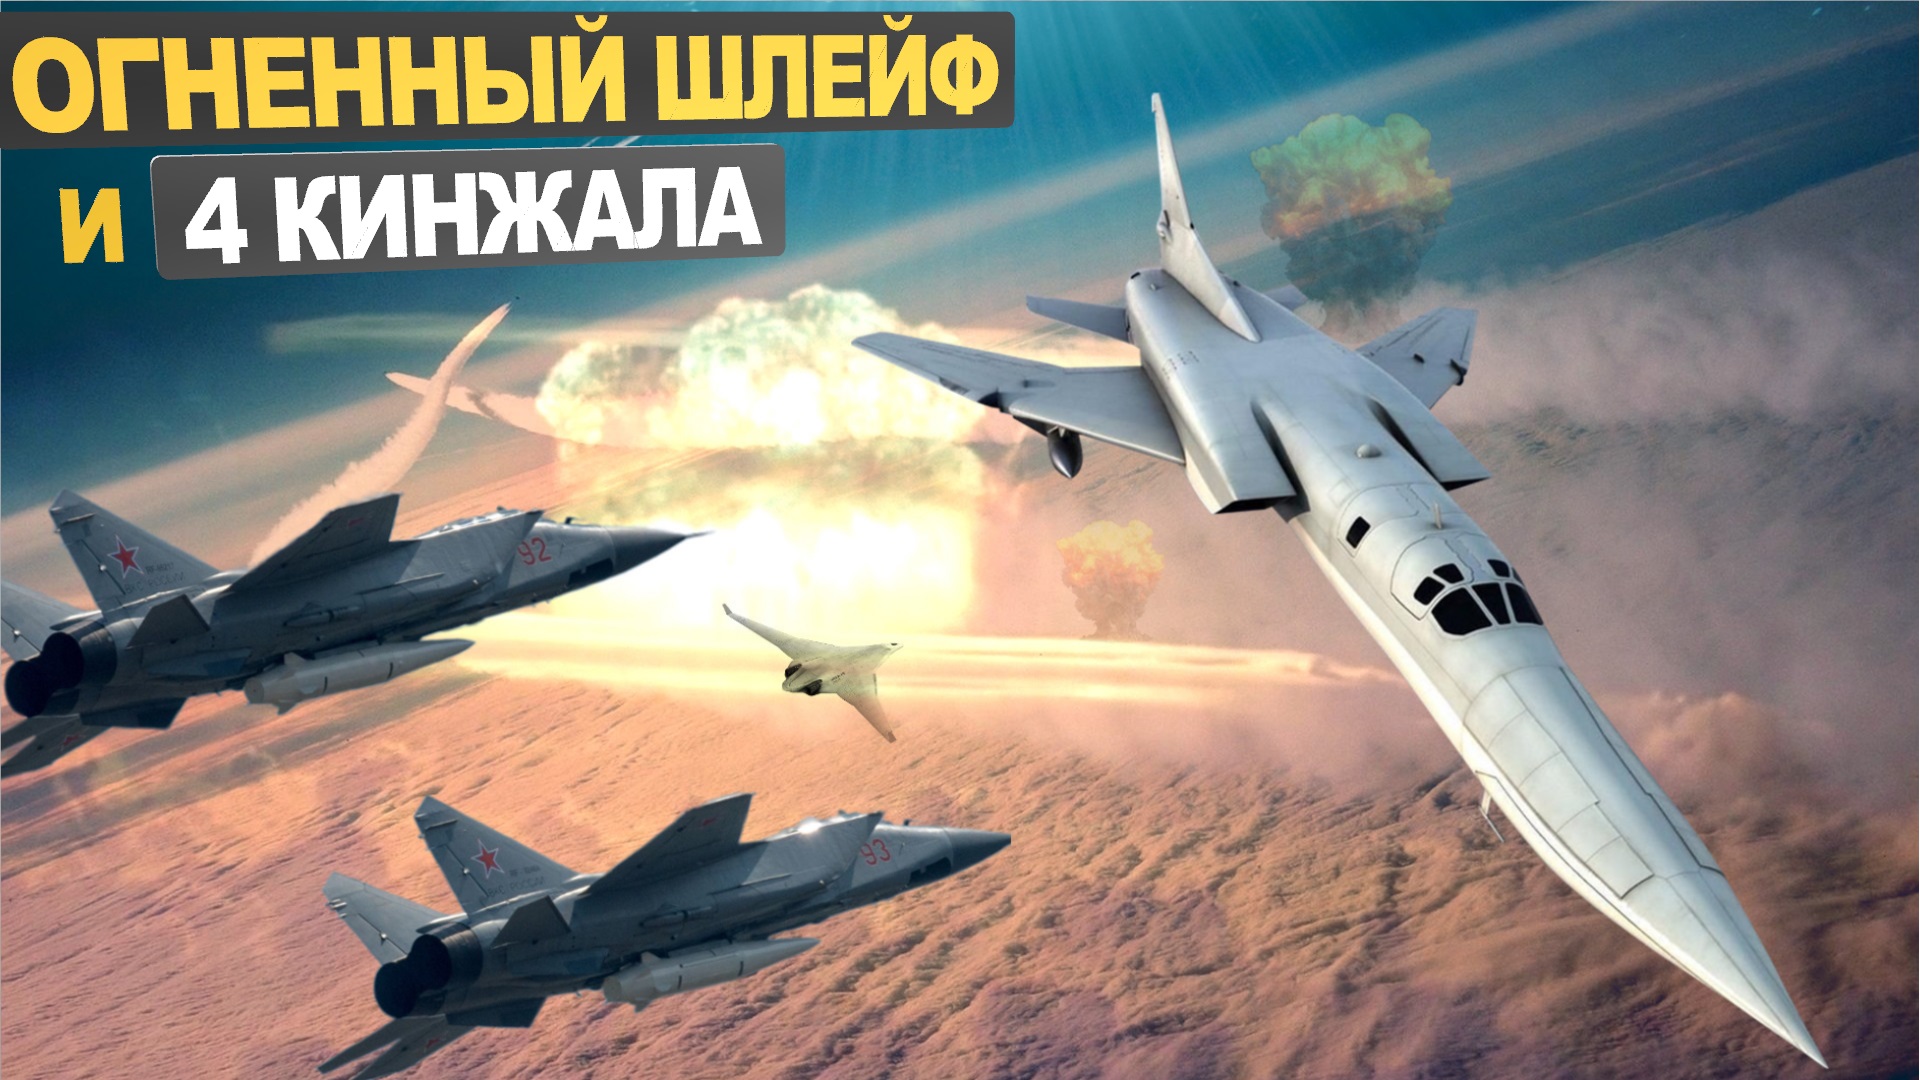 Русский «Огненный шлейф» на скорости 2300 км/ч и 4 гиперзвуковыми «Кинжалами» в небе - это серьезно!